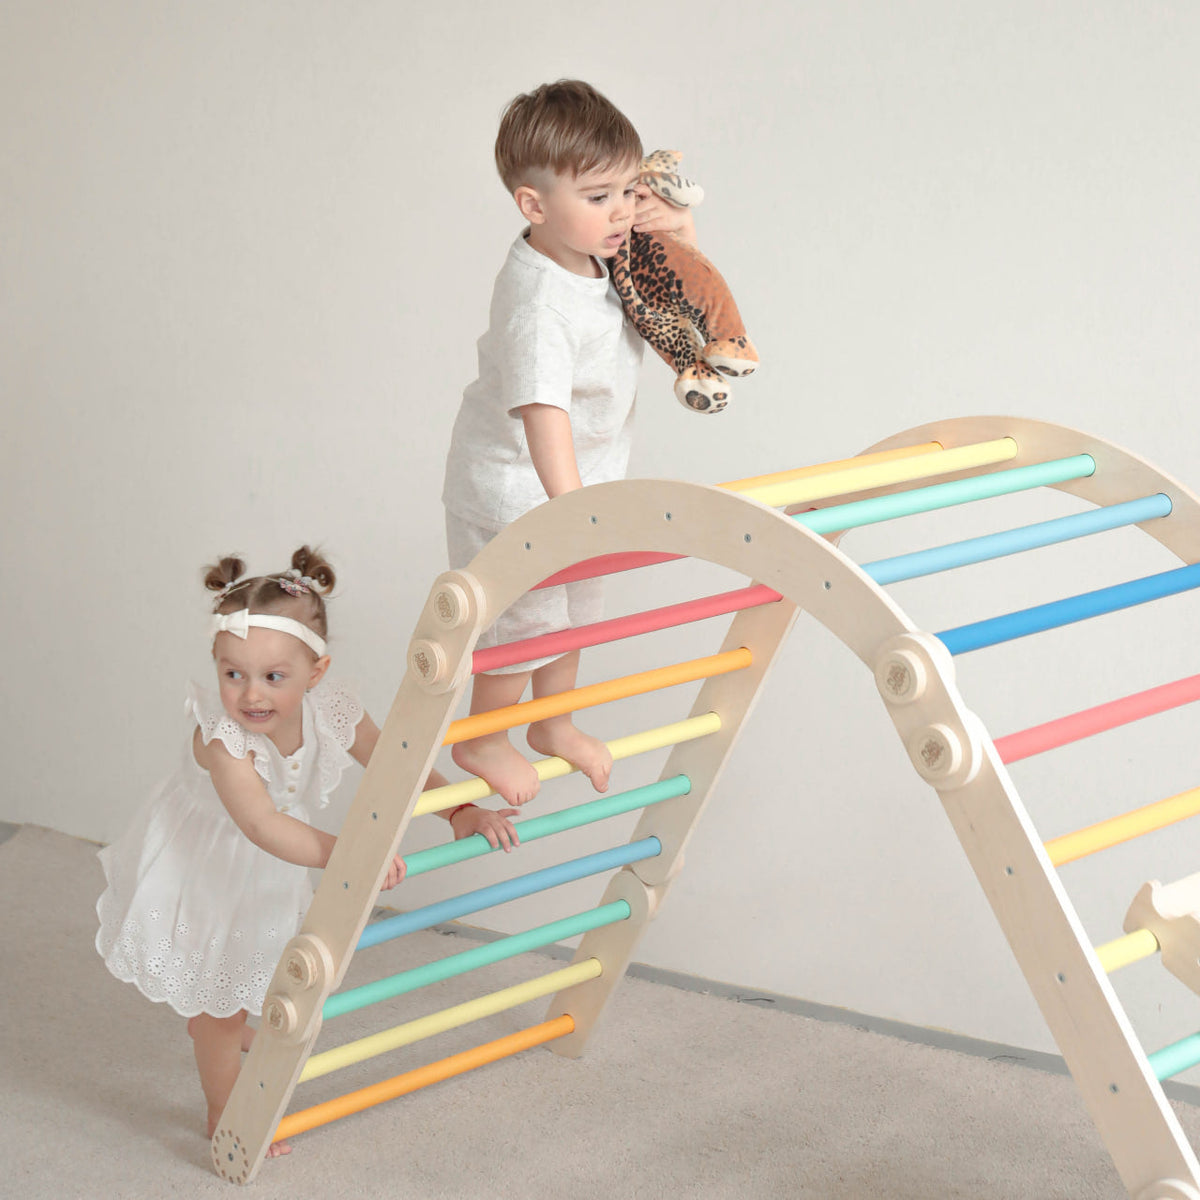 Maxi struttura per arrampicata per bambini (set L con altalena) di colore chiaro